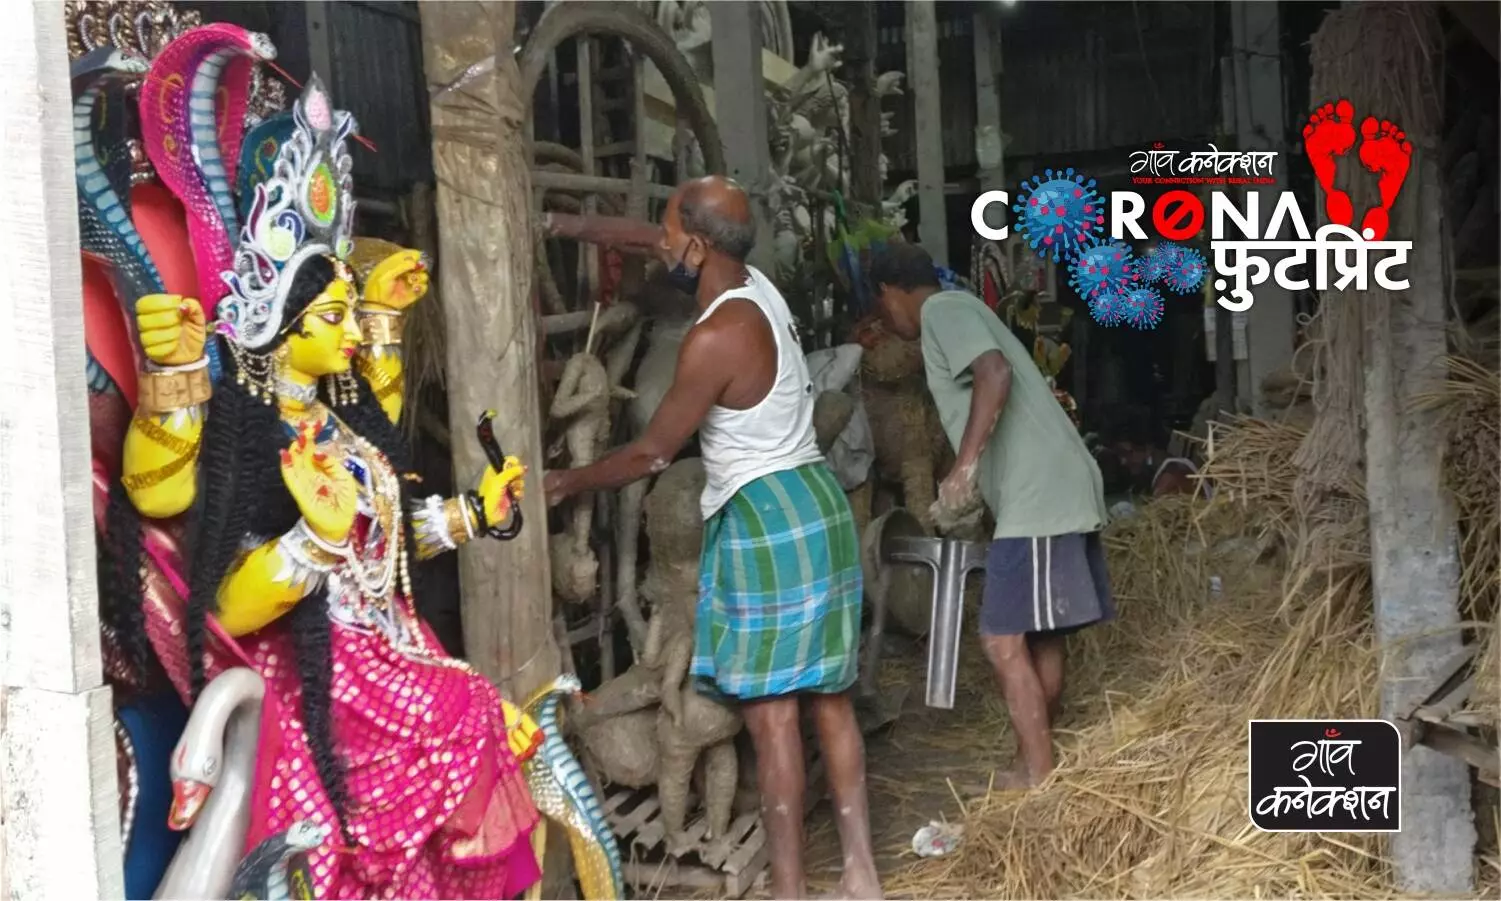 बंगाल में पीढ़ियों से मूर्तियों का काम करने वाले लाखों कारीगरों का काम कोरोना लॉकडाउन से प्रभावित